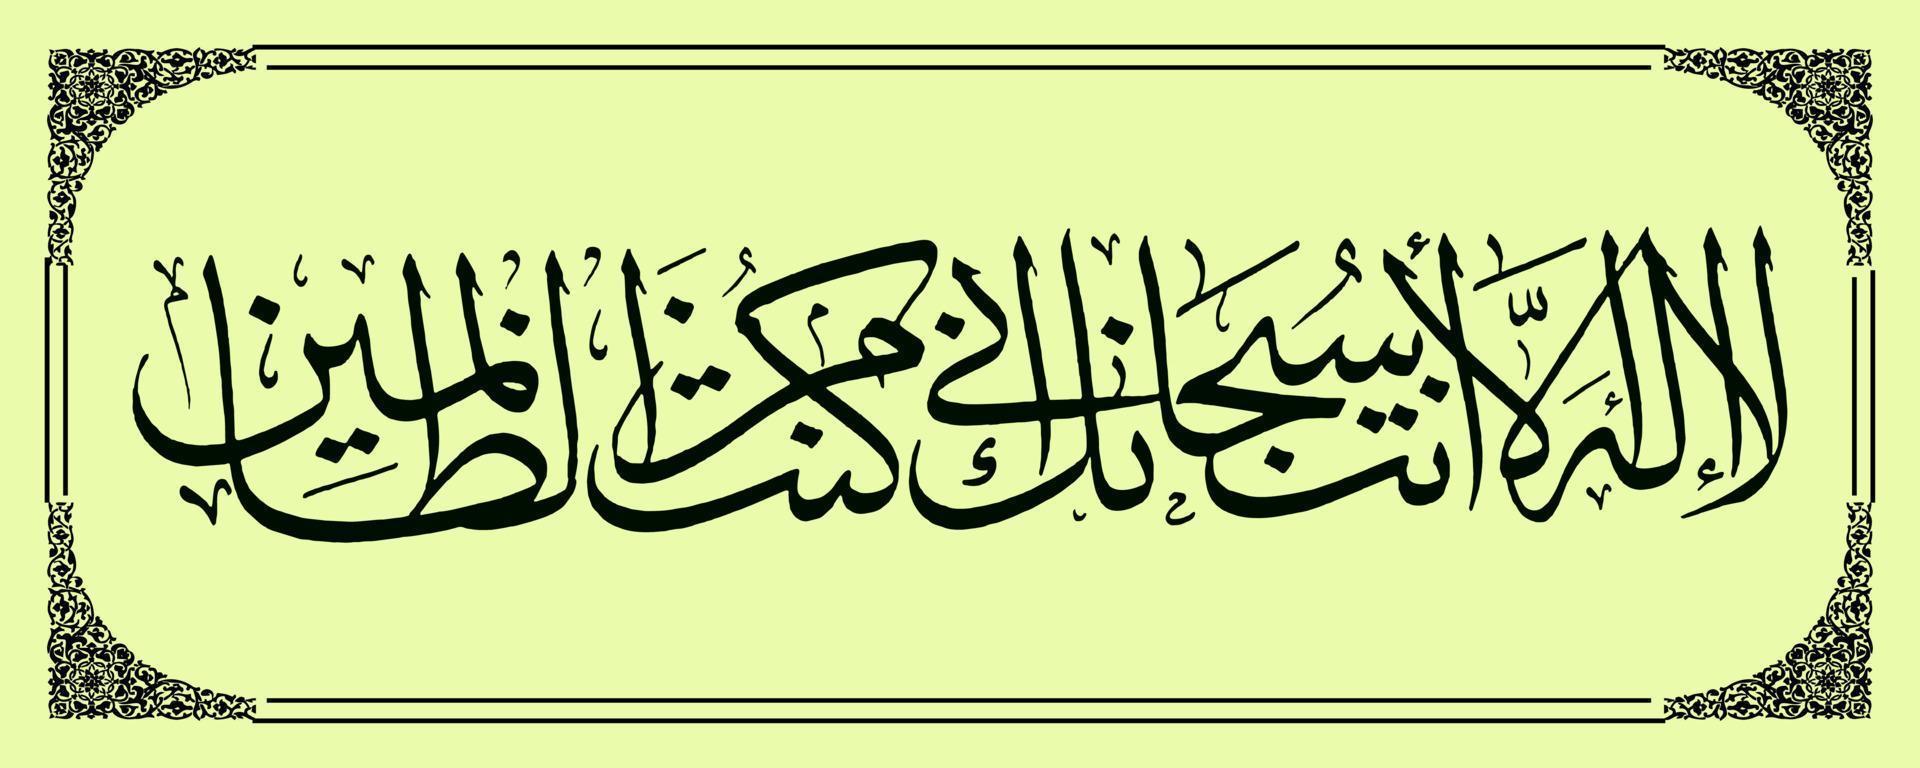 Arabische Kalligrafie der Koran-Sure Al Anbiya Vers 87, Übersetzung, dass es keinen Gott außer dir gibt. Ehre sei dir, wahrlich, ich bin einer der Übeltäter. vektor